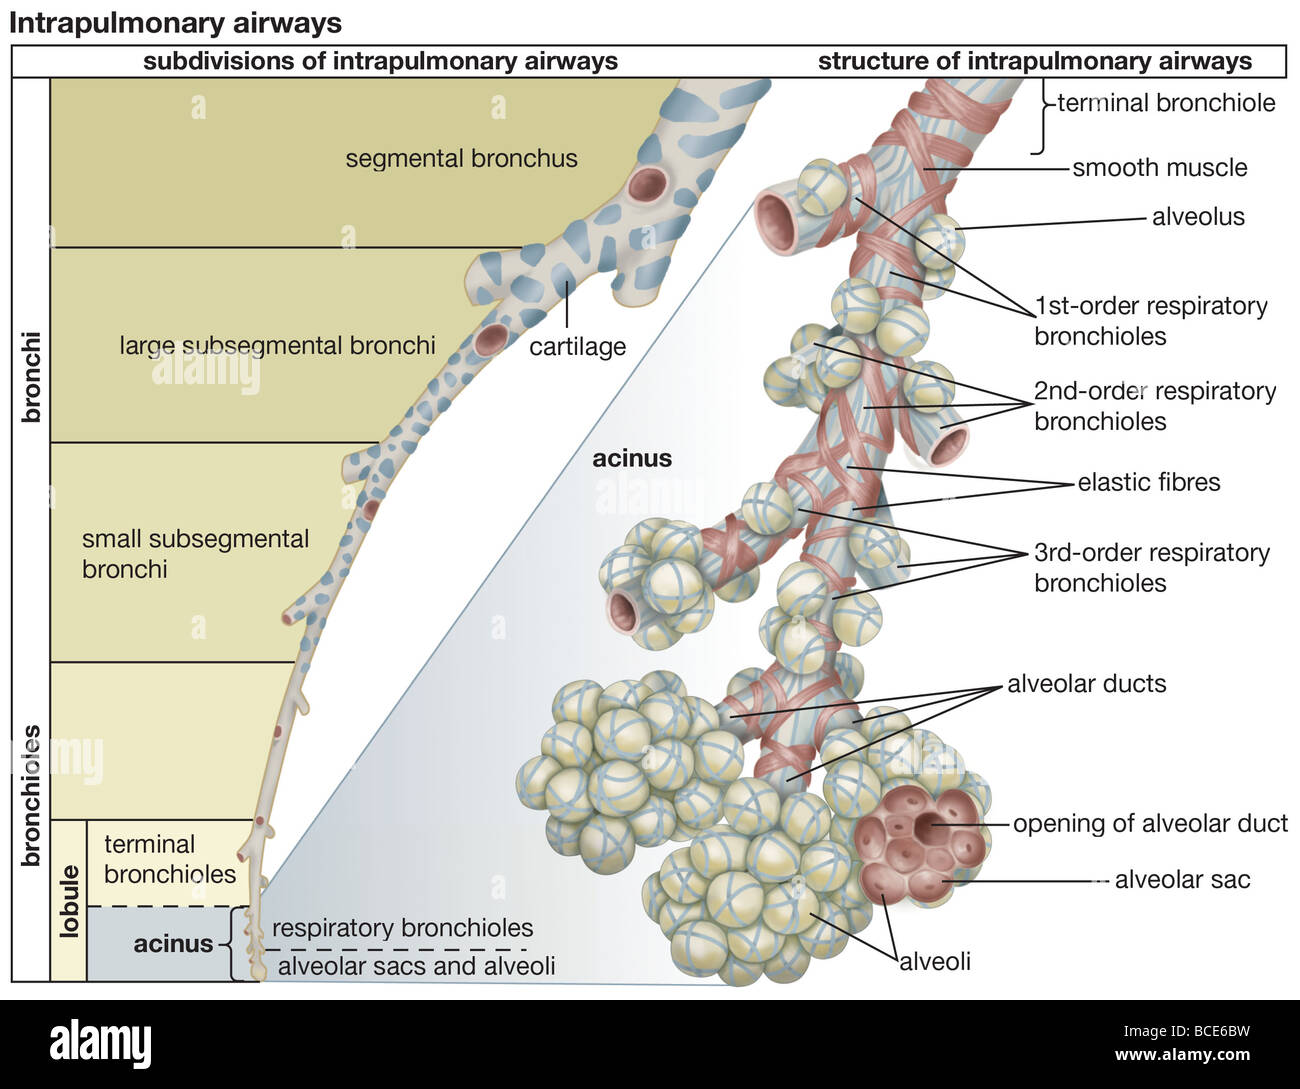 Le suddivisioni e struttura della umano airways intrapolmonare. Foto Stock